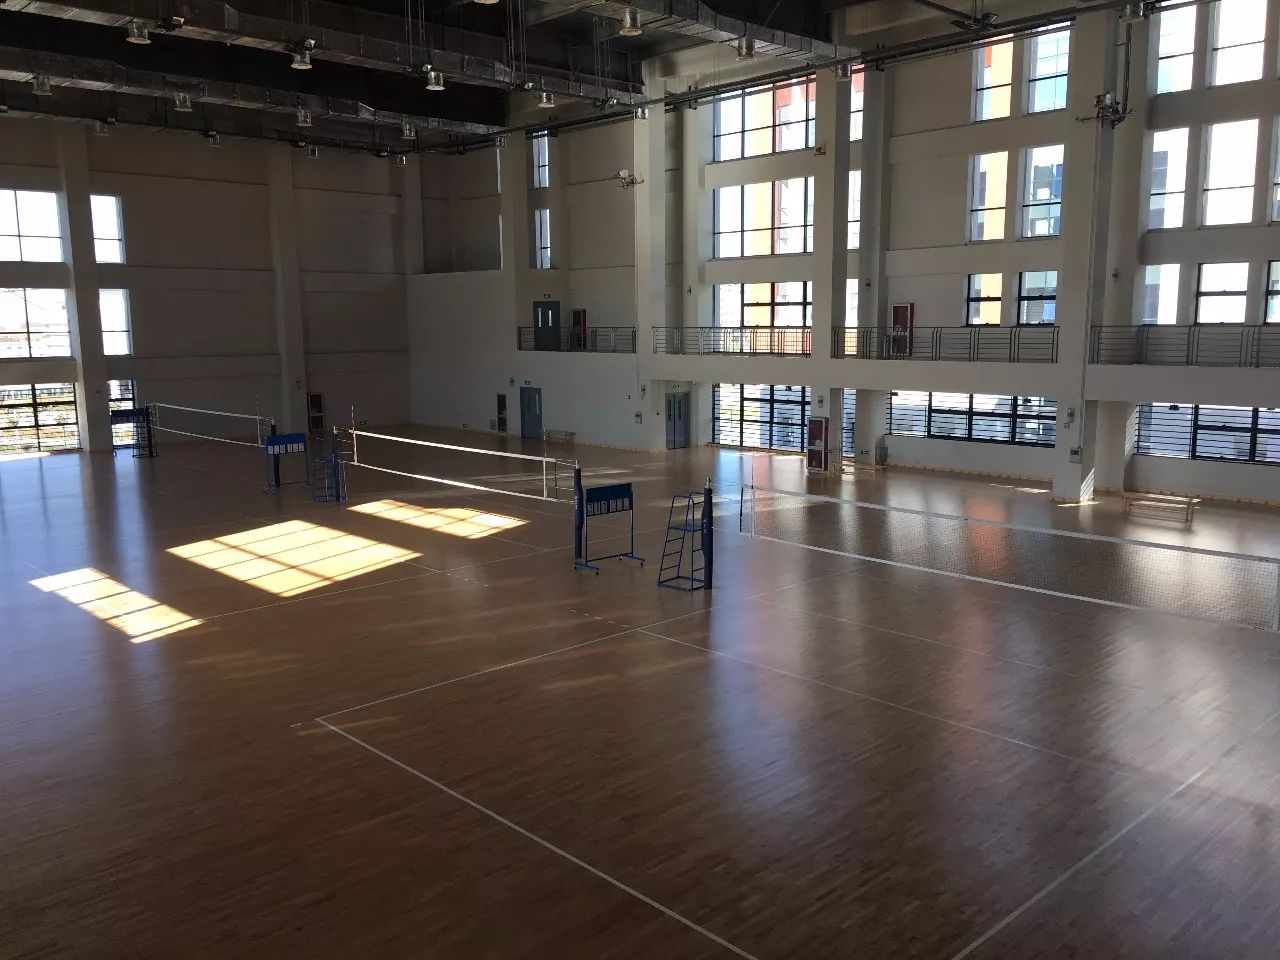 中国排球学院坐落在天津体育学院团泊校区,依托天津体育学院教学资源